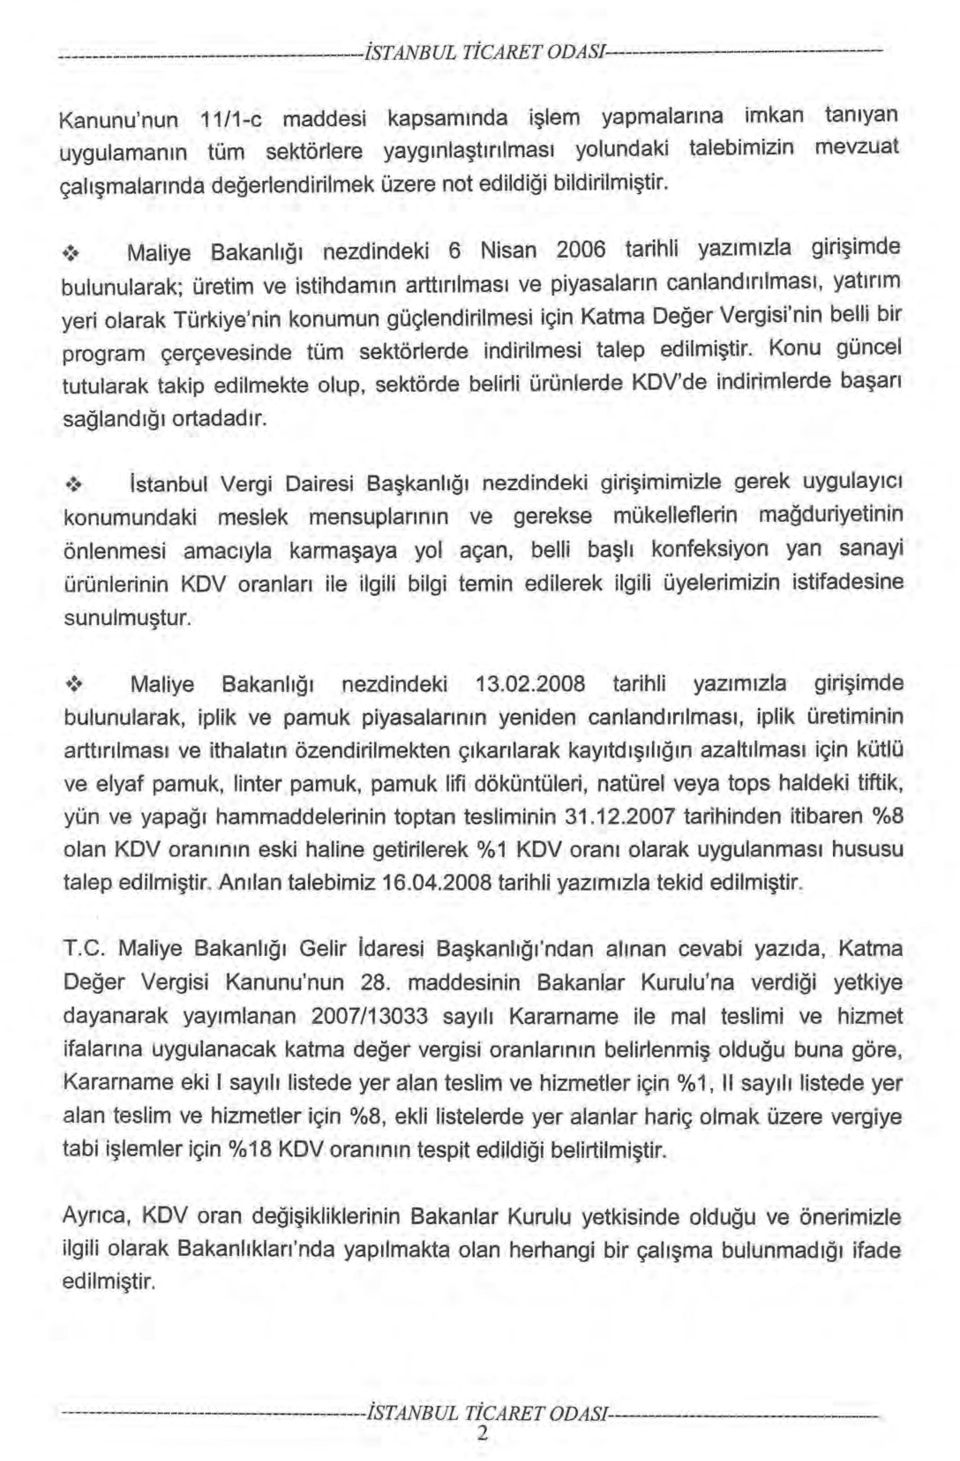 ! Maliye Bakanlığı nezdindeki 6 Nisan 2006 tarihli yazımızla girişimde bulunularak; üretim ve istihdamın arttırılması ve piyasaların canlandırılması, yatırım yeri olarak Türkiye'nin konumun